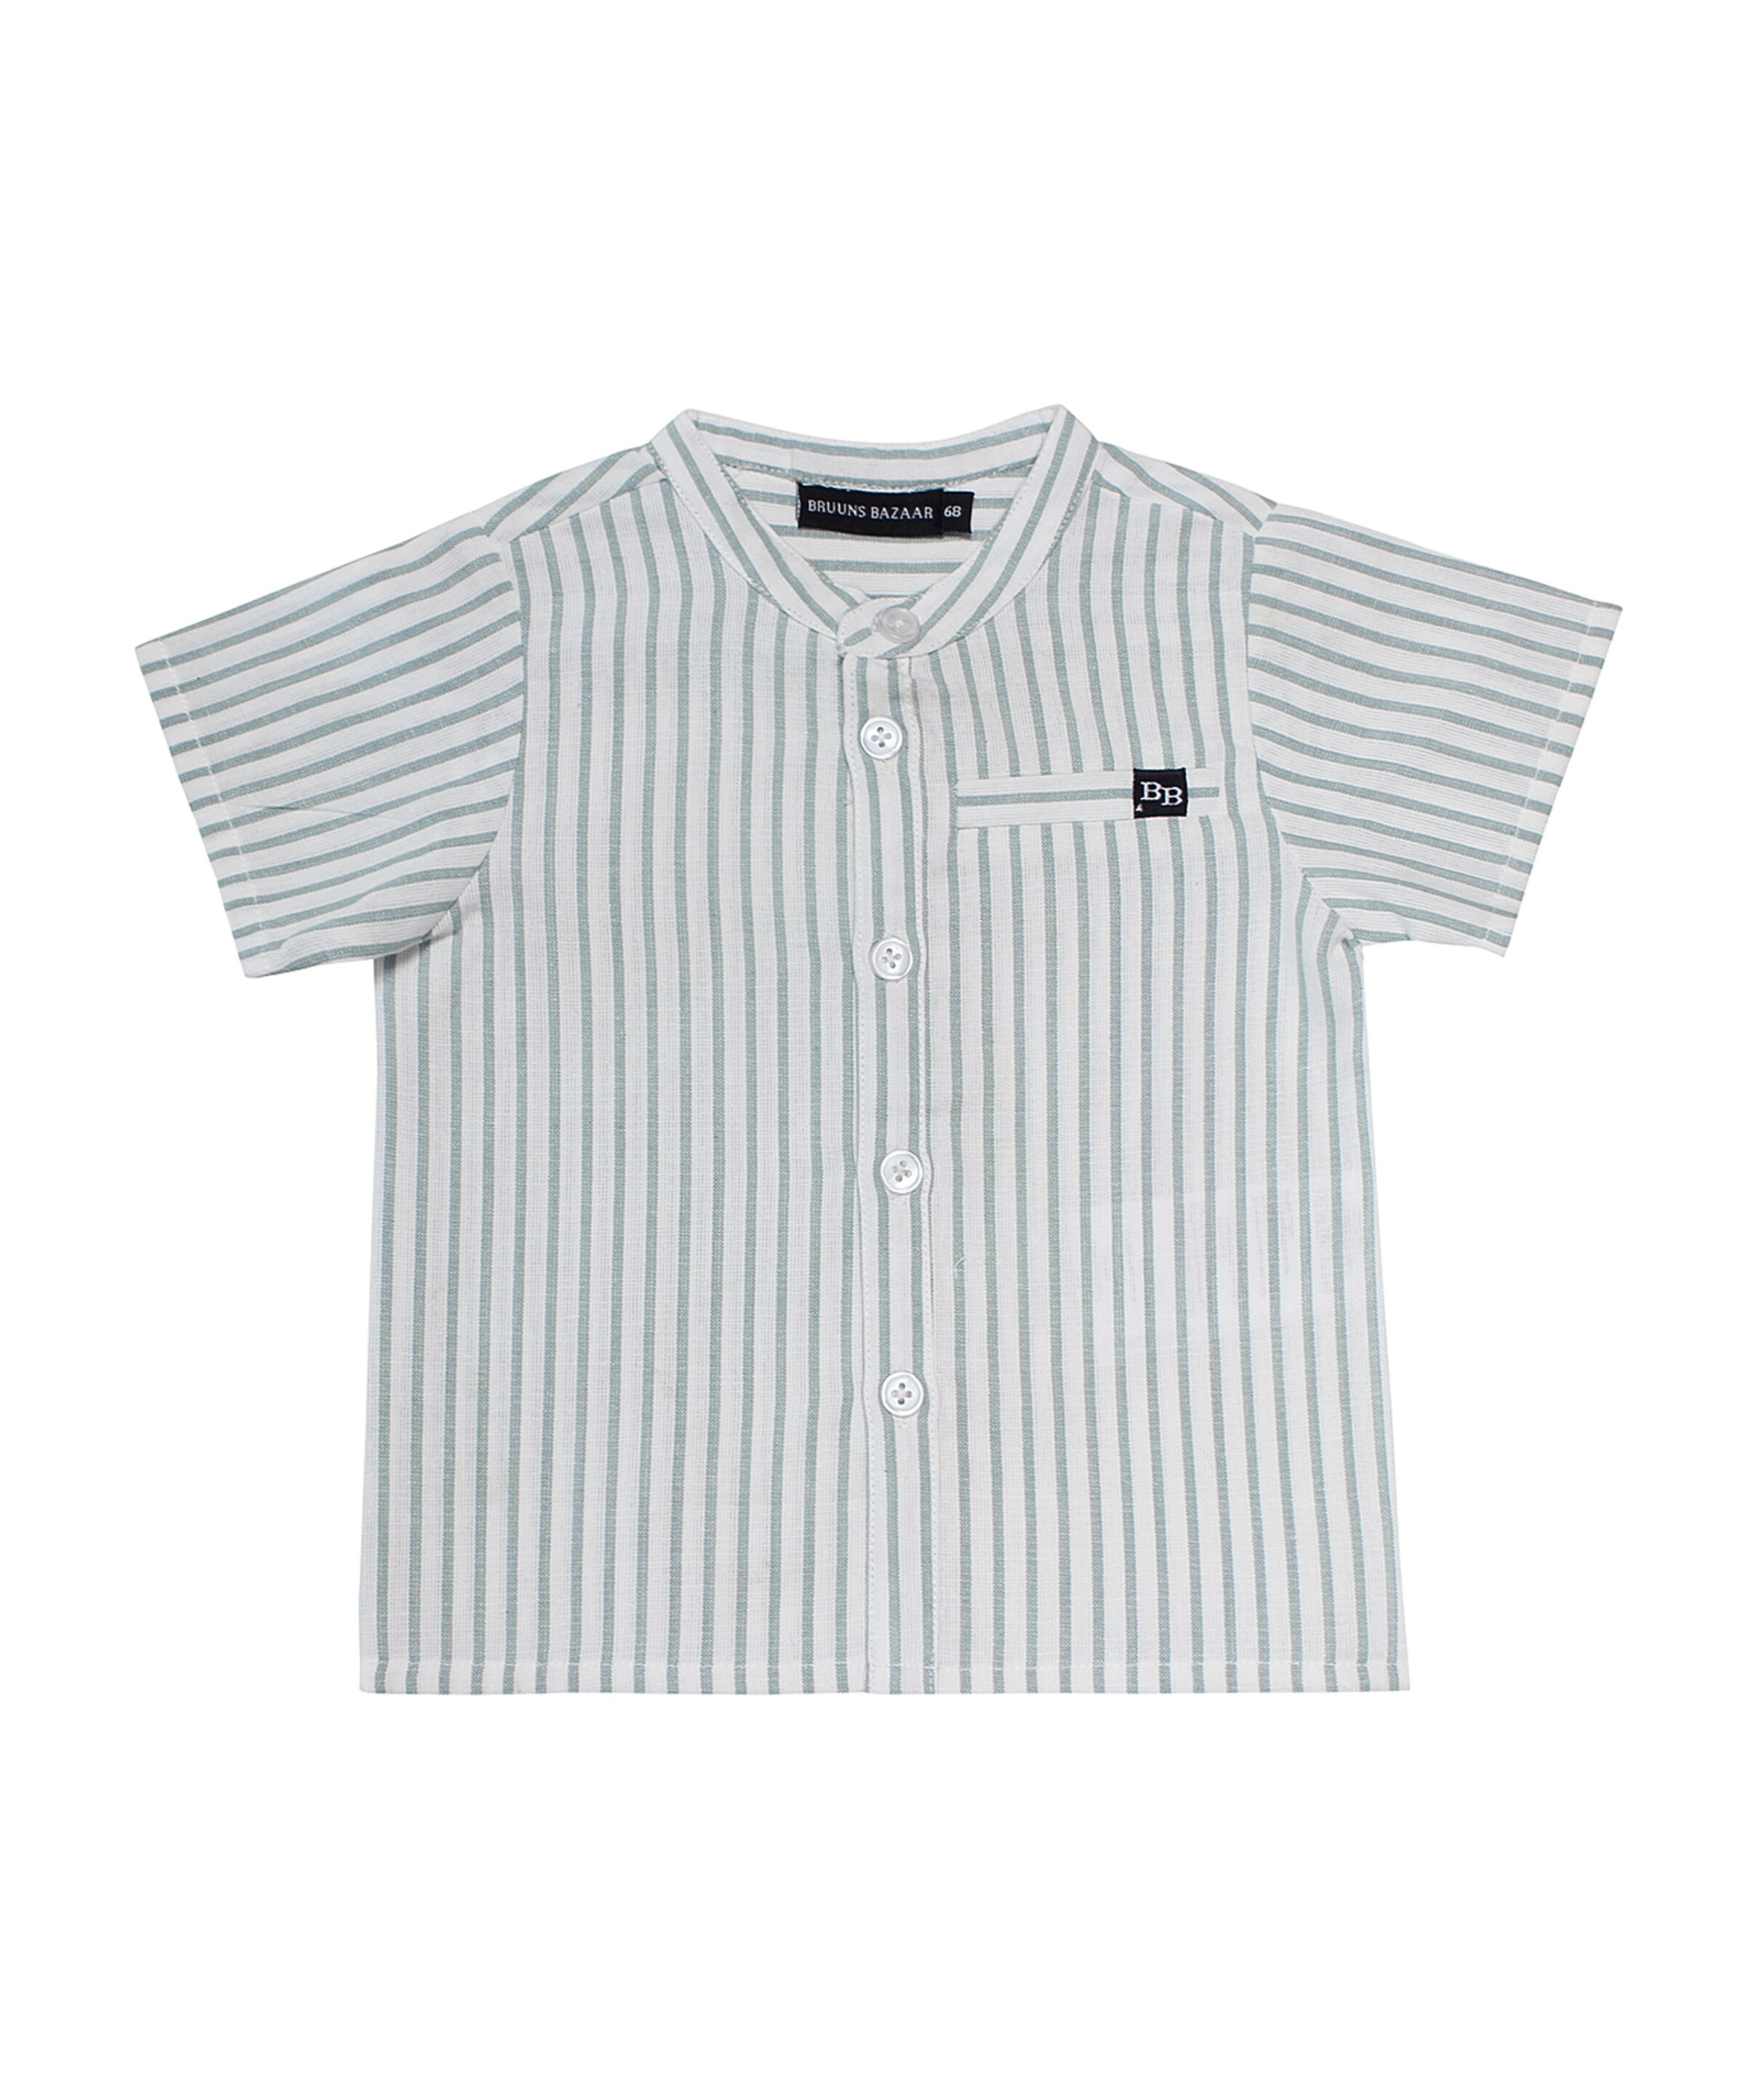 Bruuns Bazaar Kids T-Shirt 50 Blanc